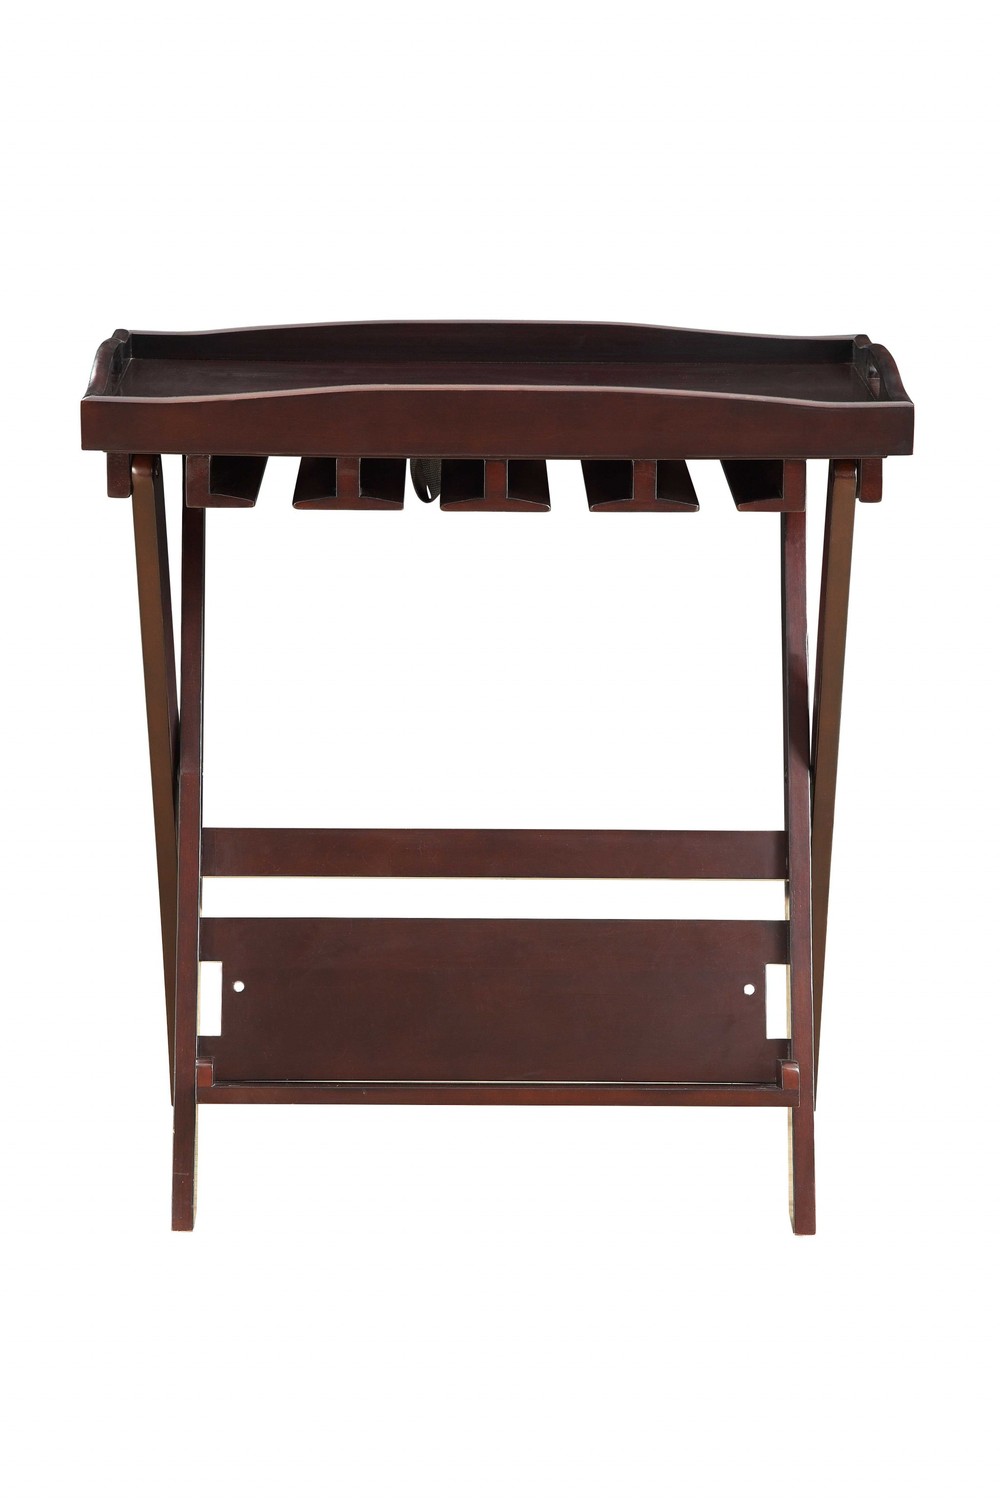 Mahogony Wooden Foldable Tray Table